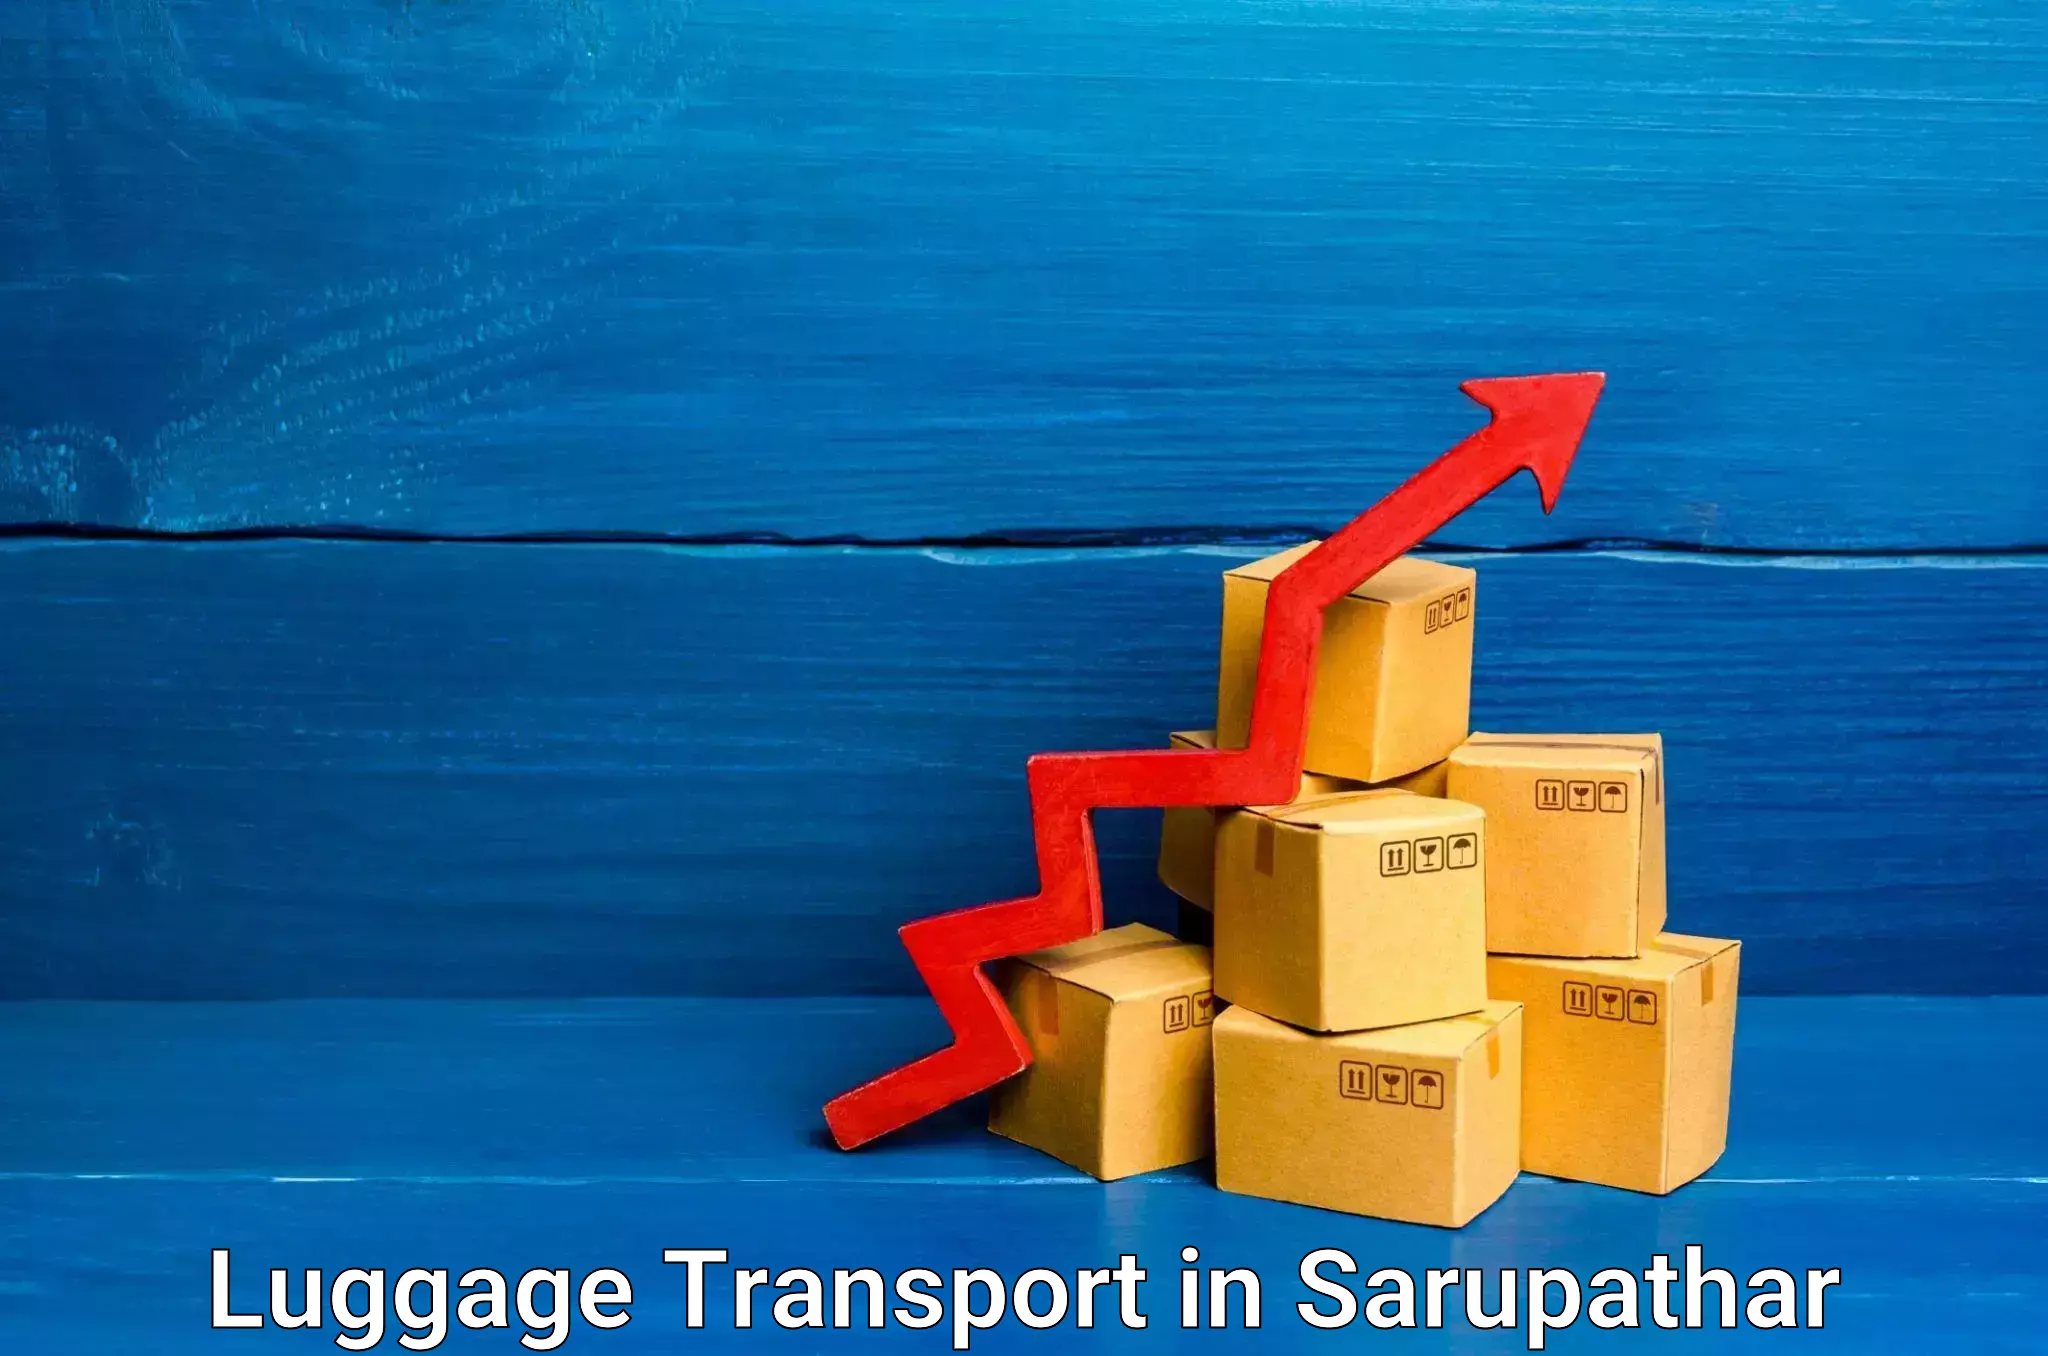 Same day luggage service in Sarupathar